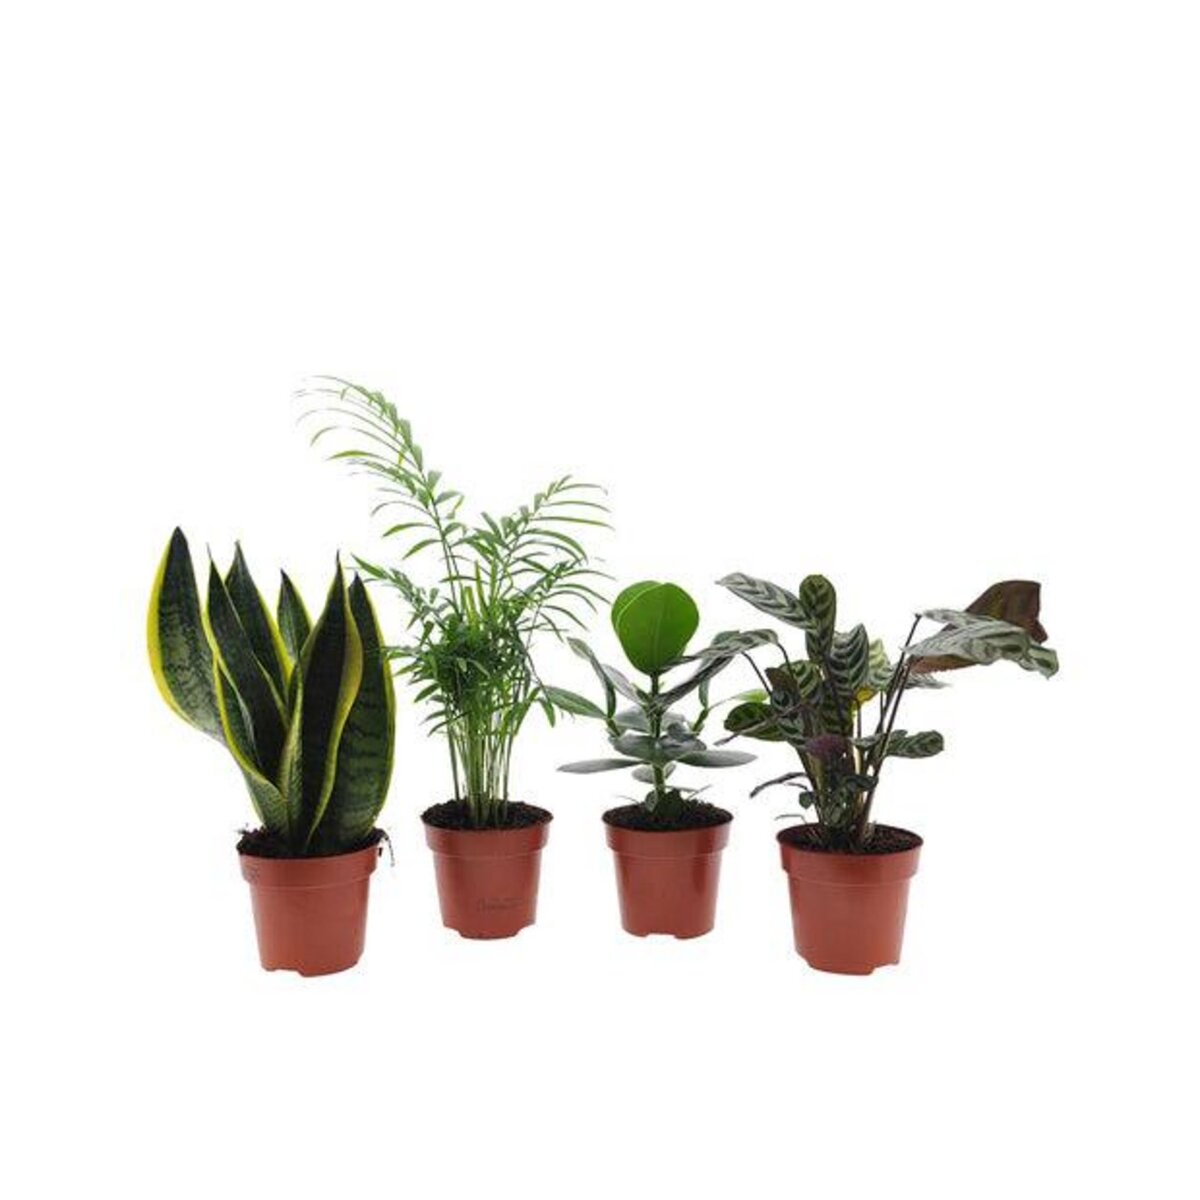  Collection de plantes d'intérieur faciles - Les 4 pots / Ø 12cm / Hauteur livrée 25-50cm - Willemse